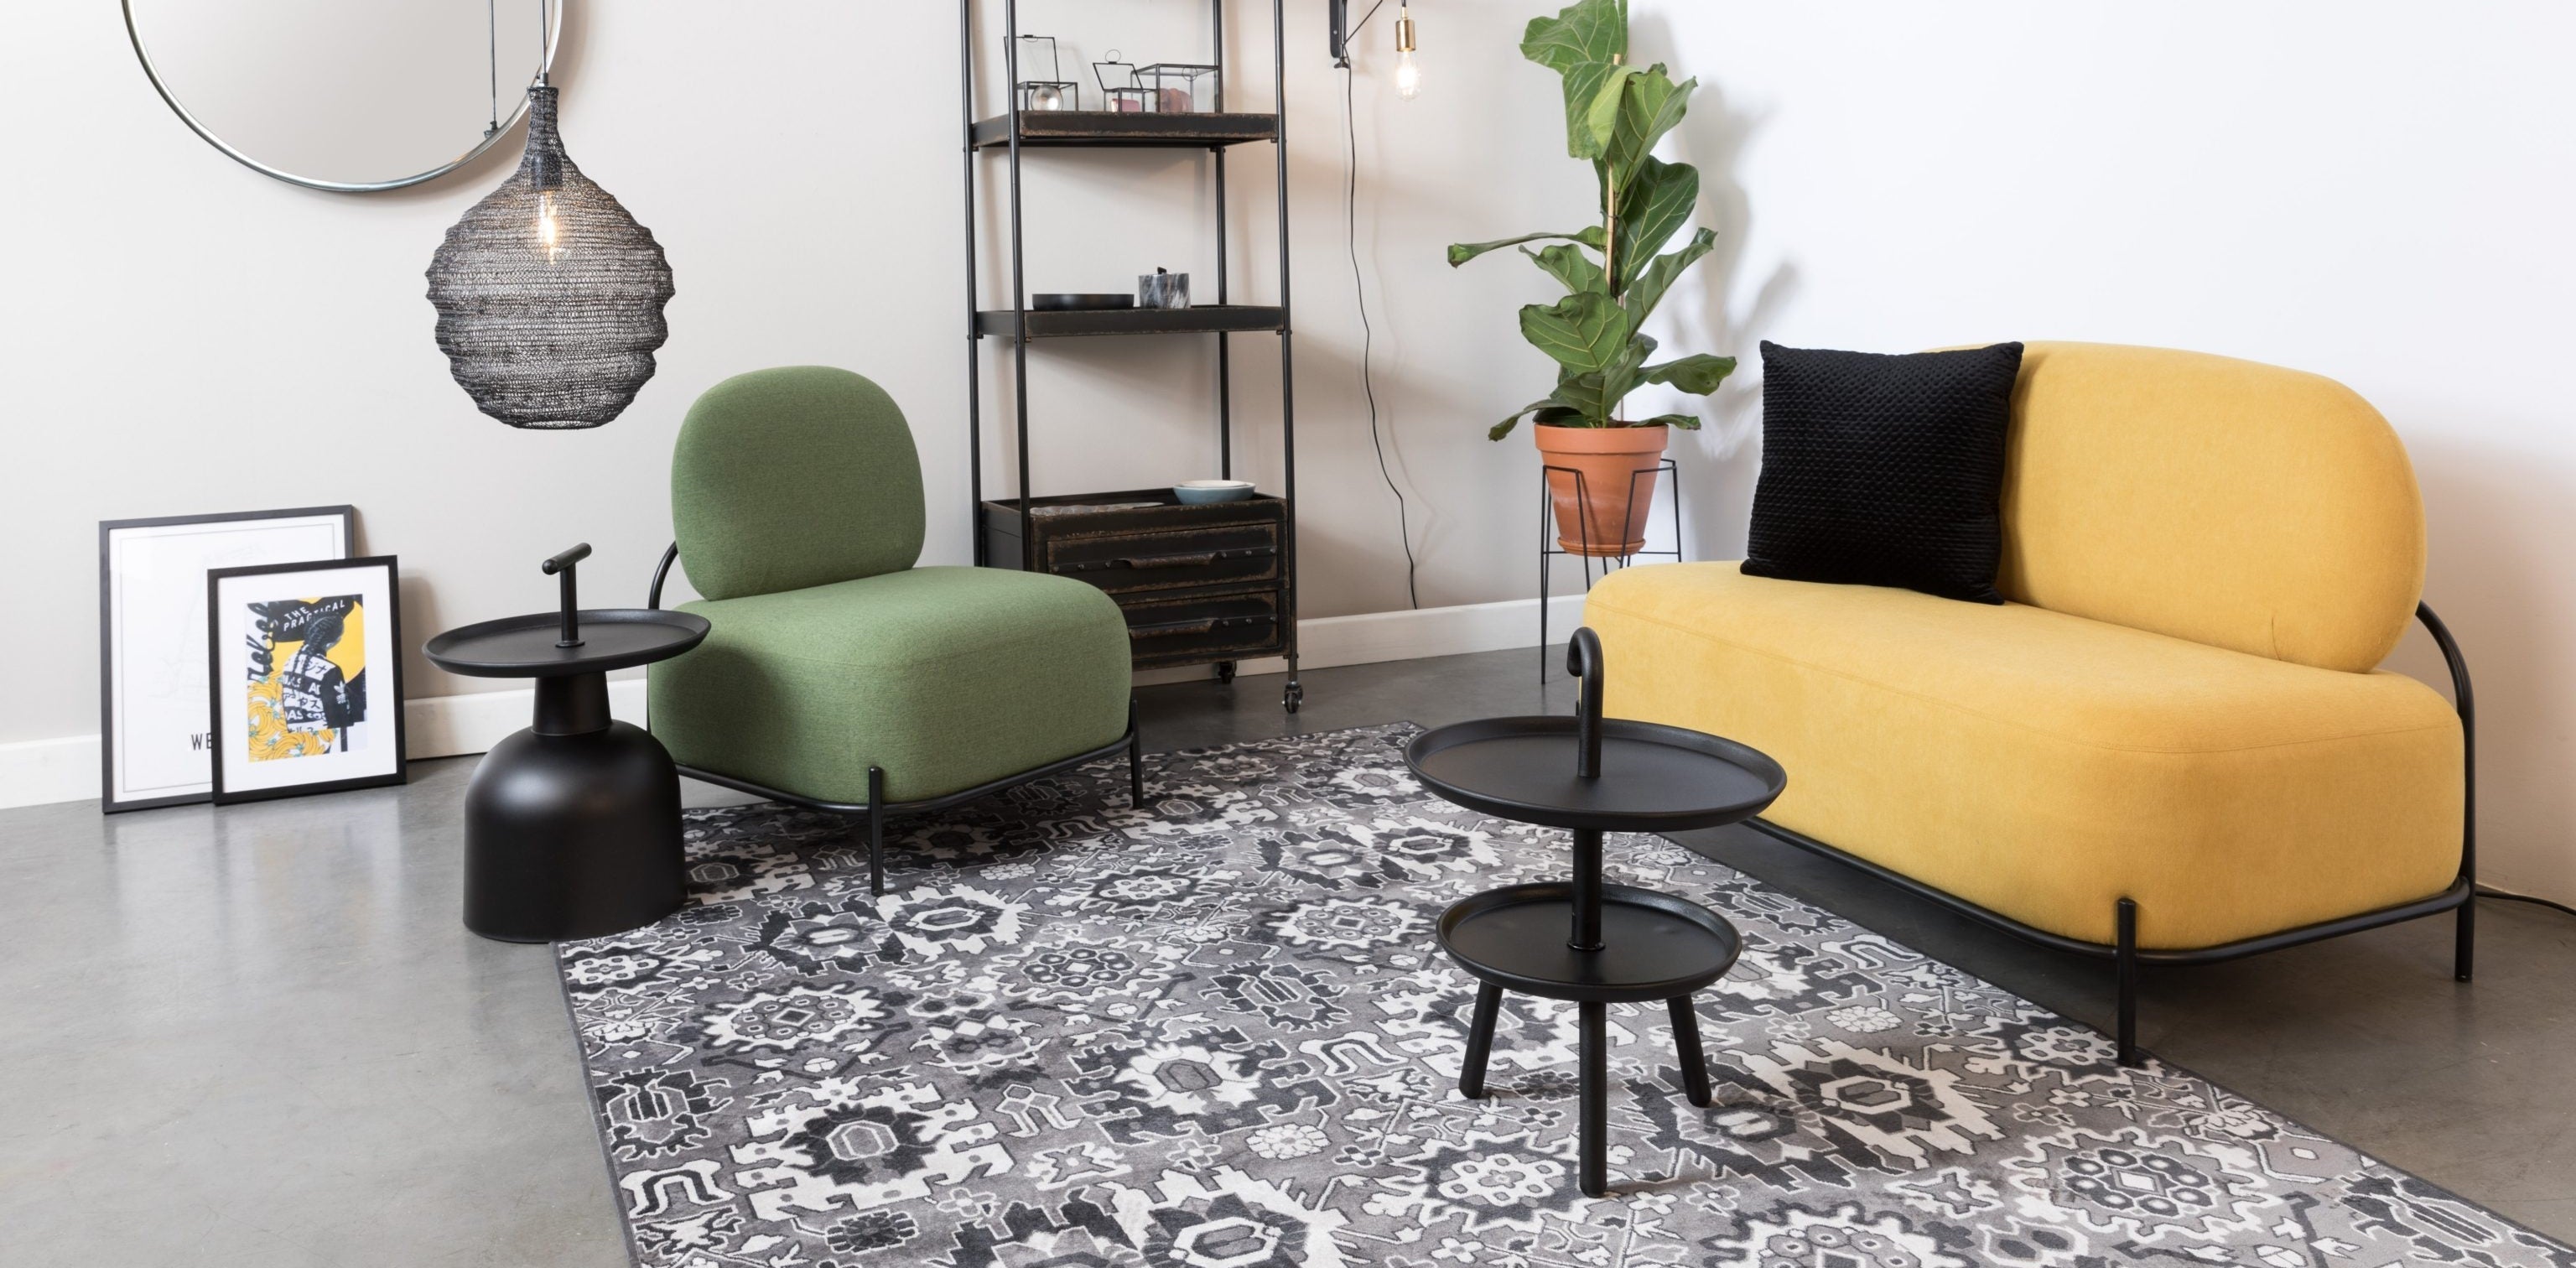 Eklektyczny salon, w którym znajduje się niewielka żółta sofa oraz niebieski fotel. Na podłodze położone wzorzysty, czarno-biały dywan.